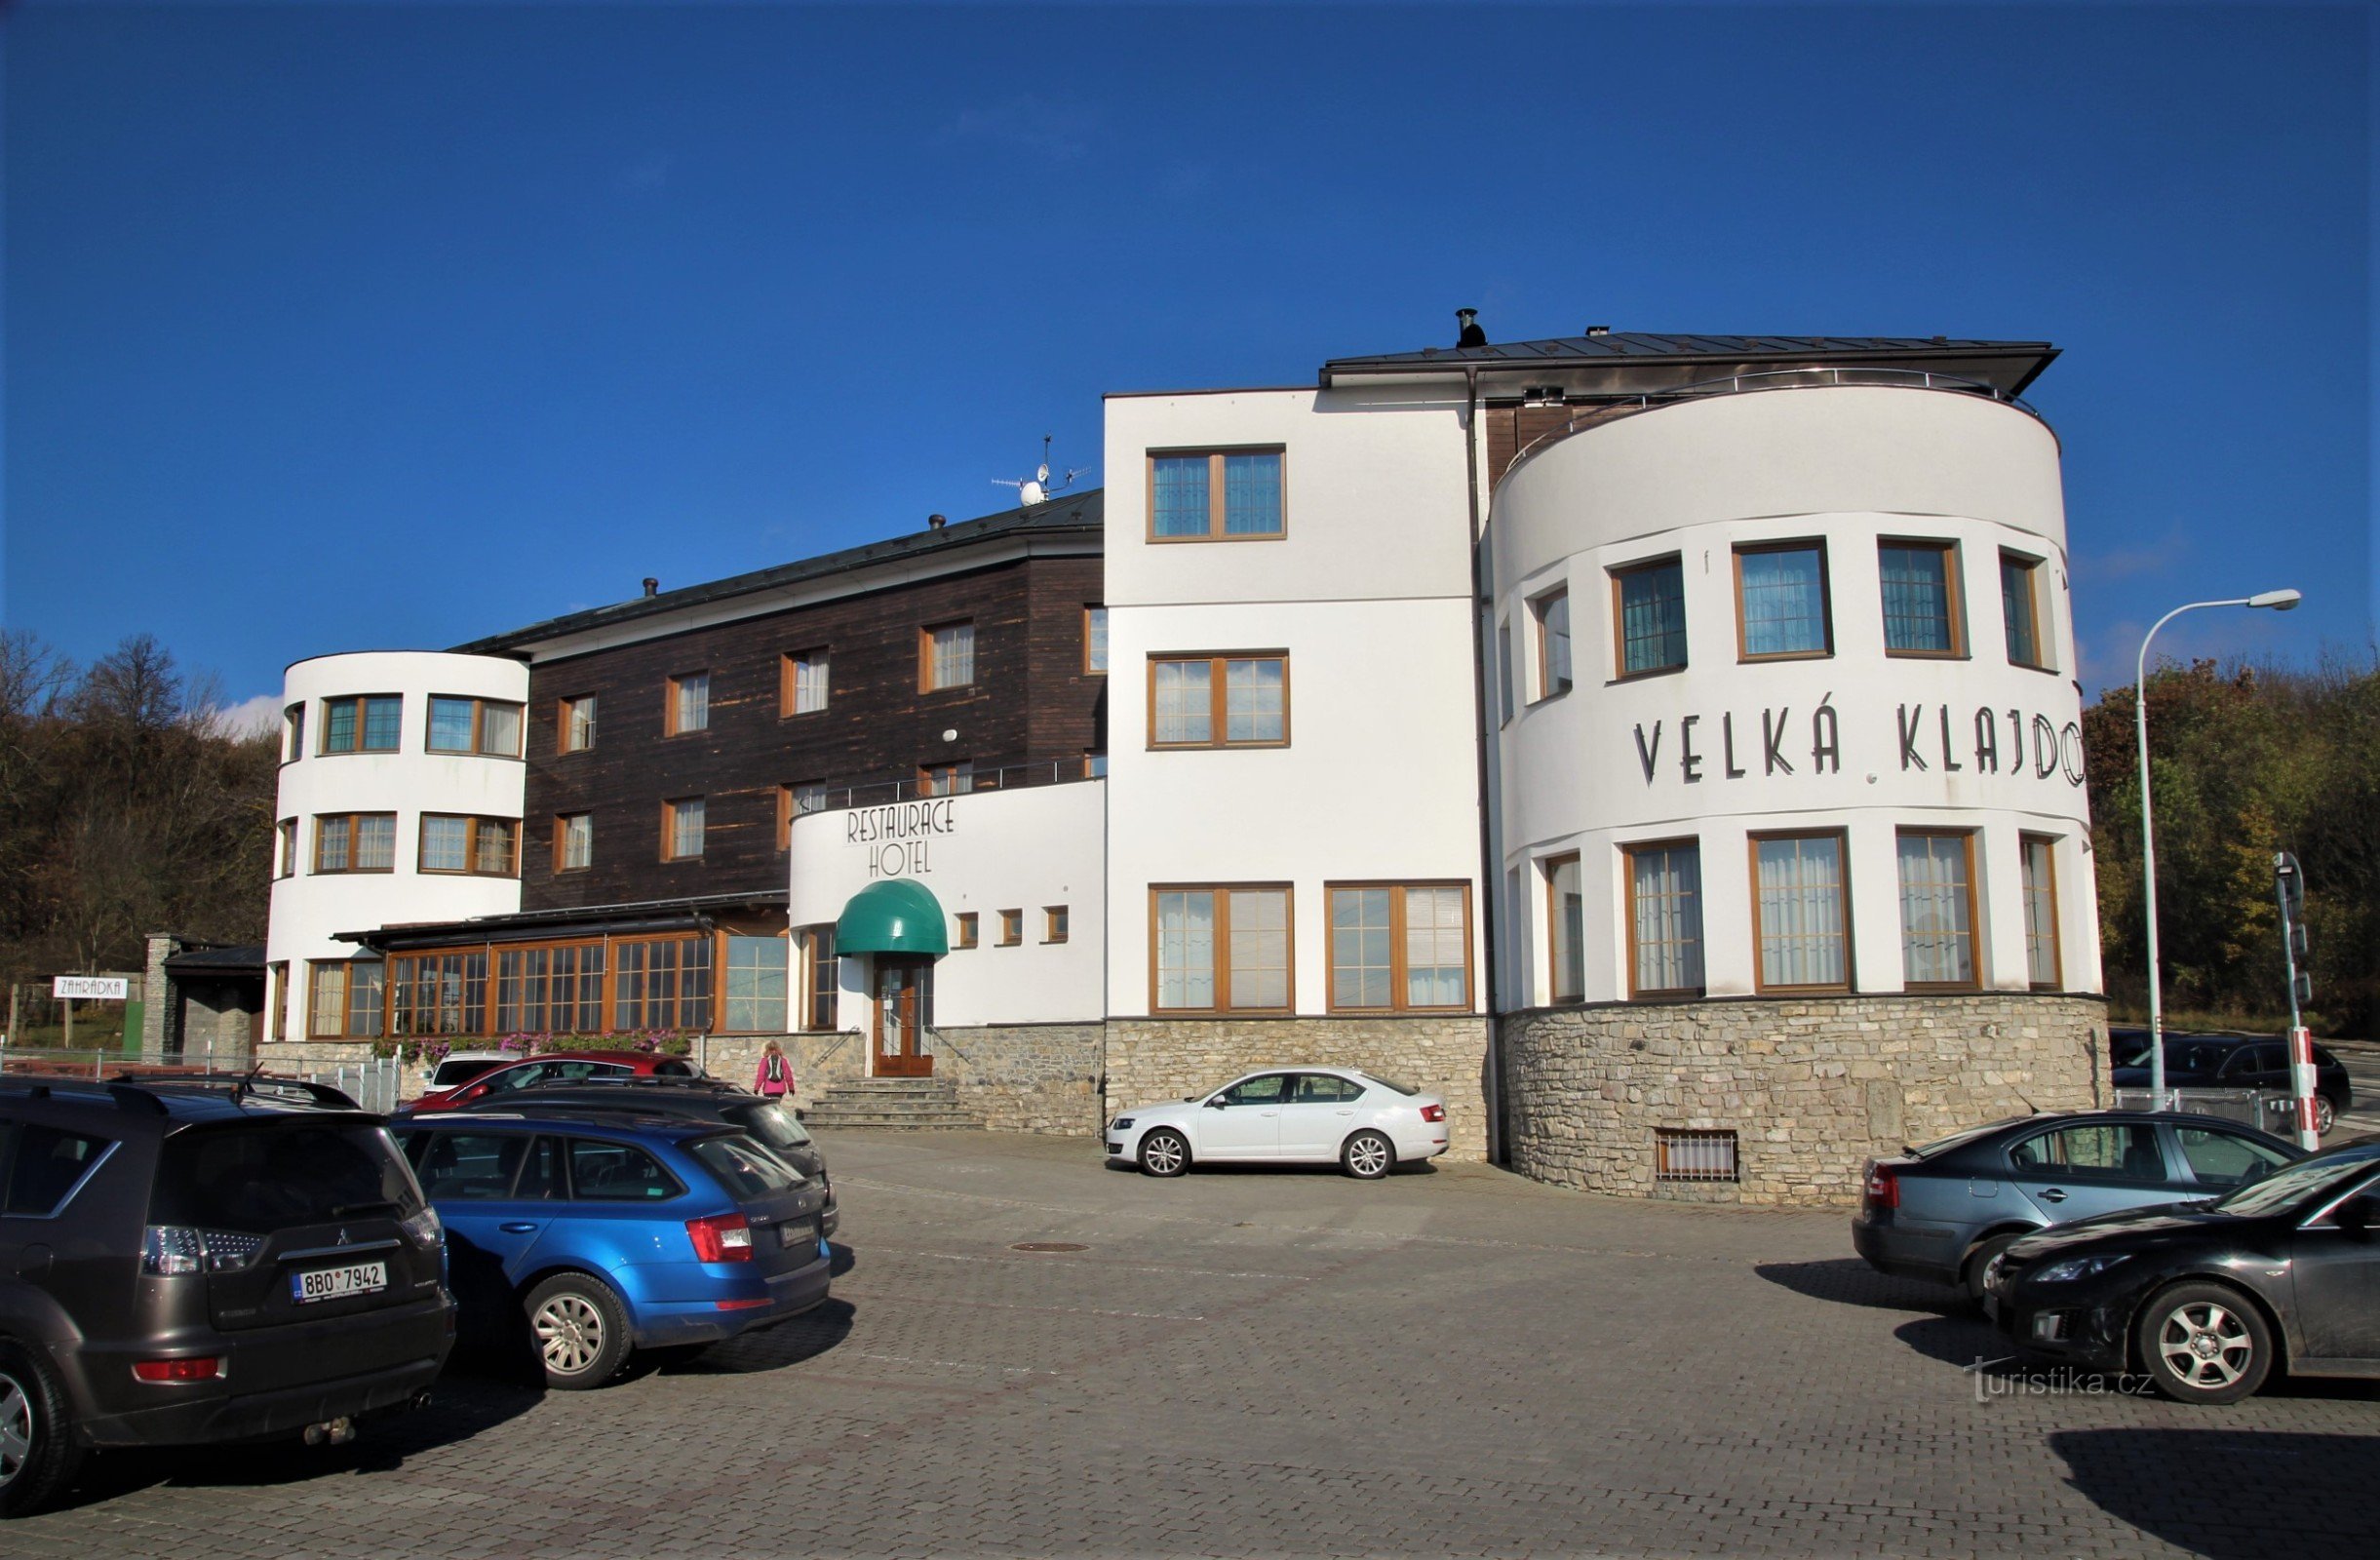 Một điểm quan trọng trên tuyến đường là khách sạn đầy phong cách Velká Klajdovka